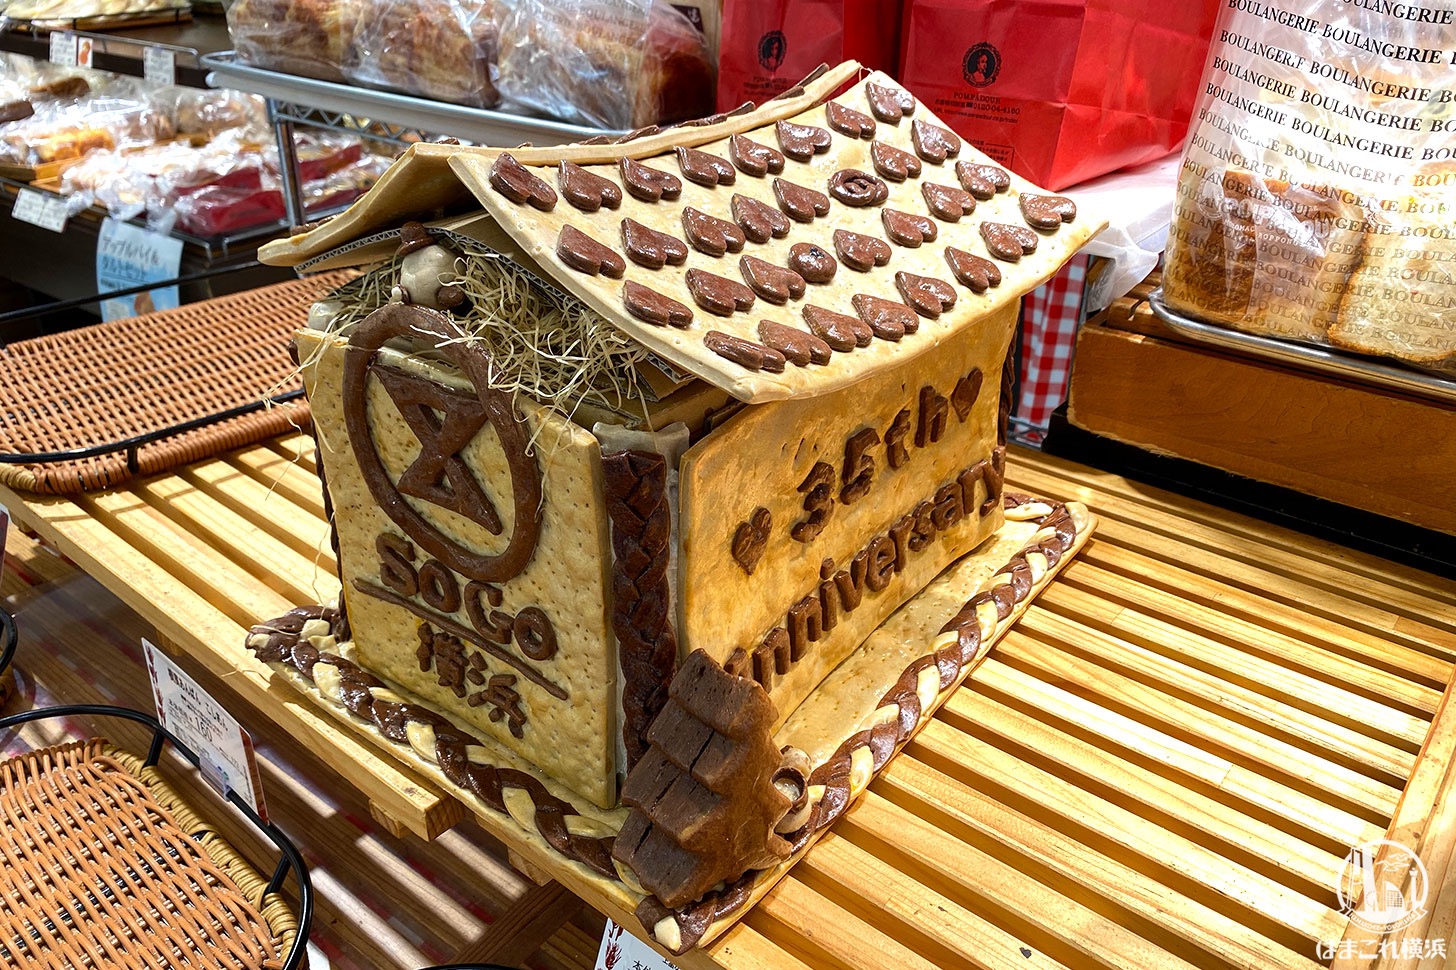 ポンパドウル そごう横浜店35th Anniversary パン